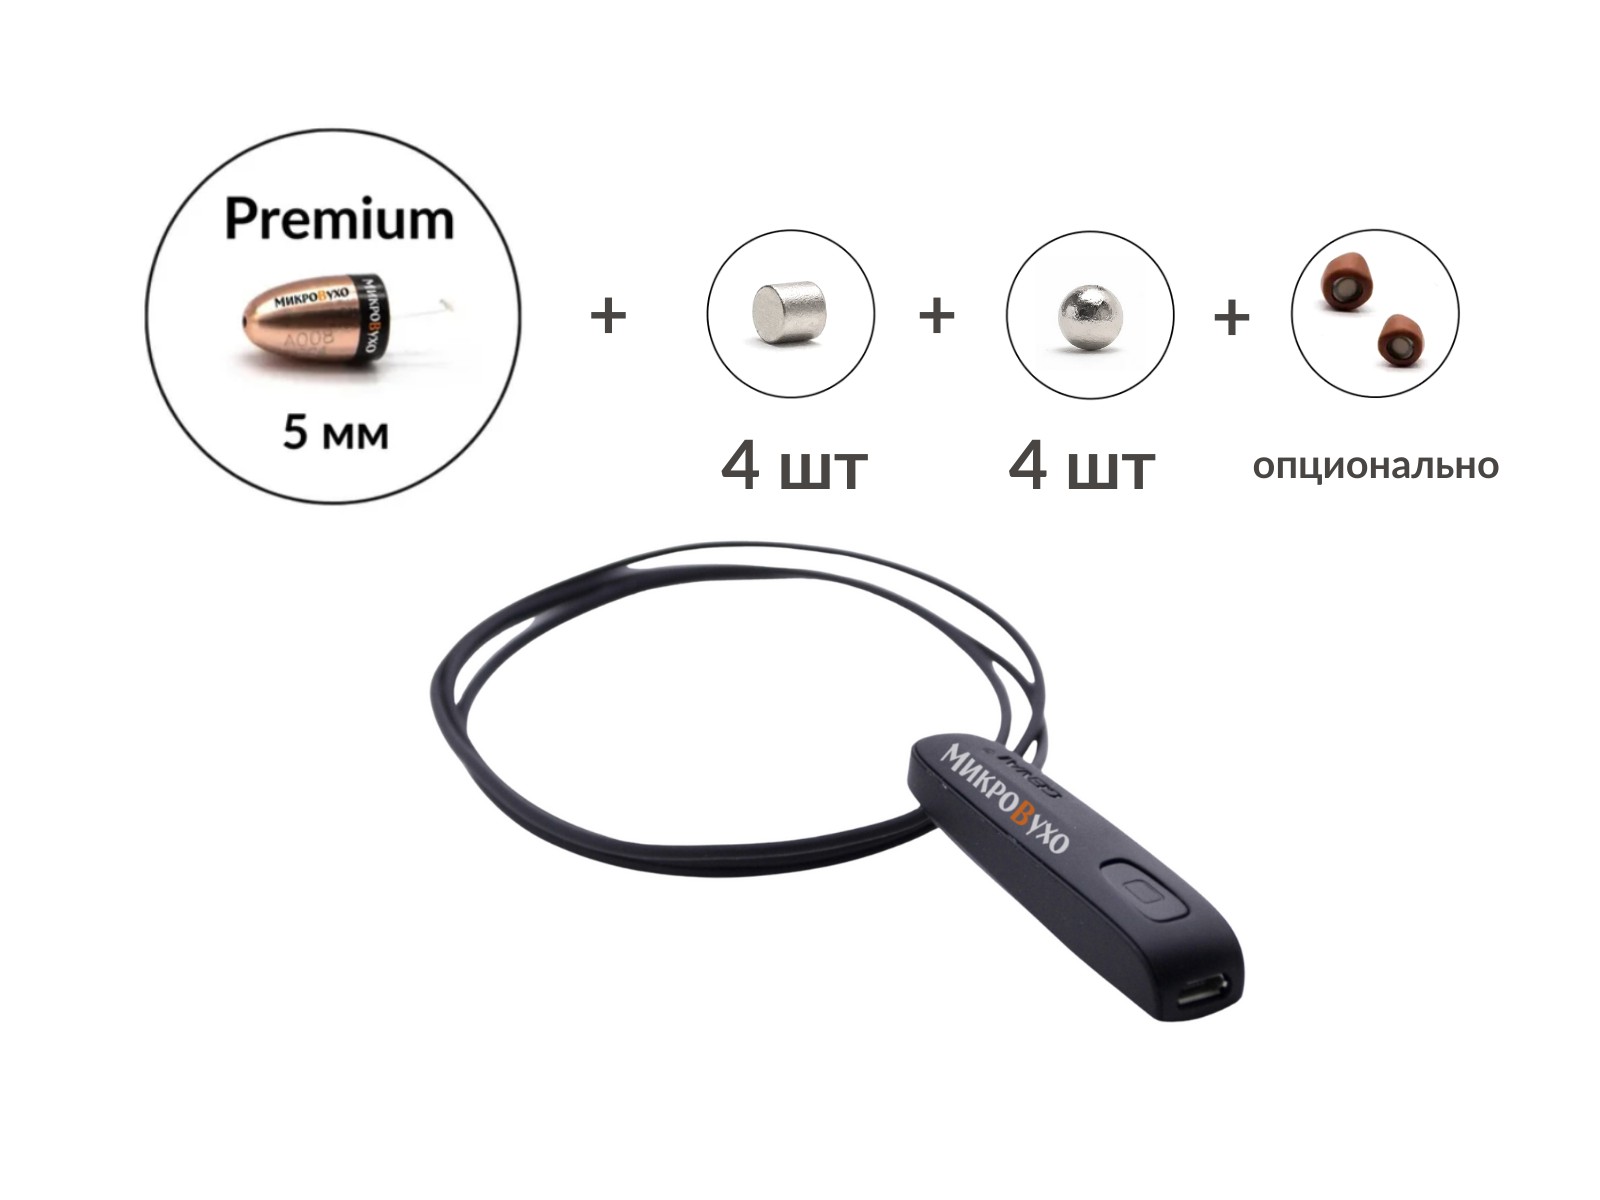 Универсальная гарнитура Bluetooth Basic с капсулой K5 4 мм и магнитами 2 мм